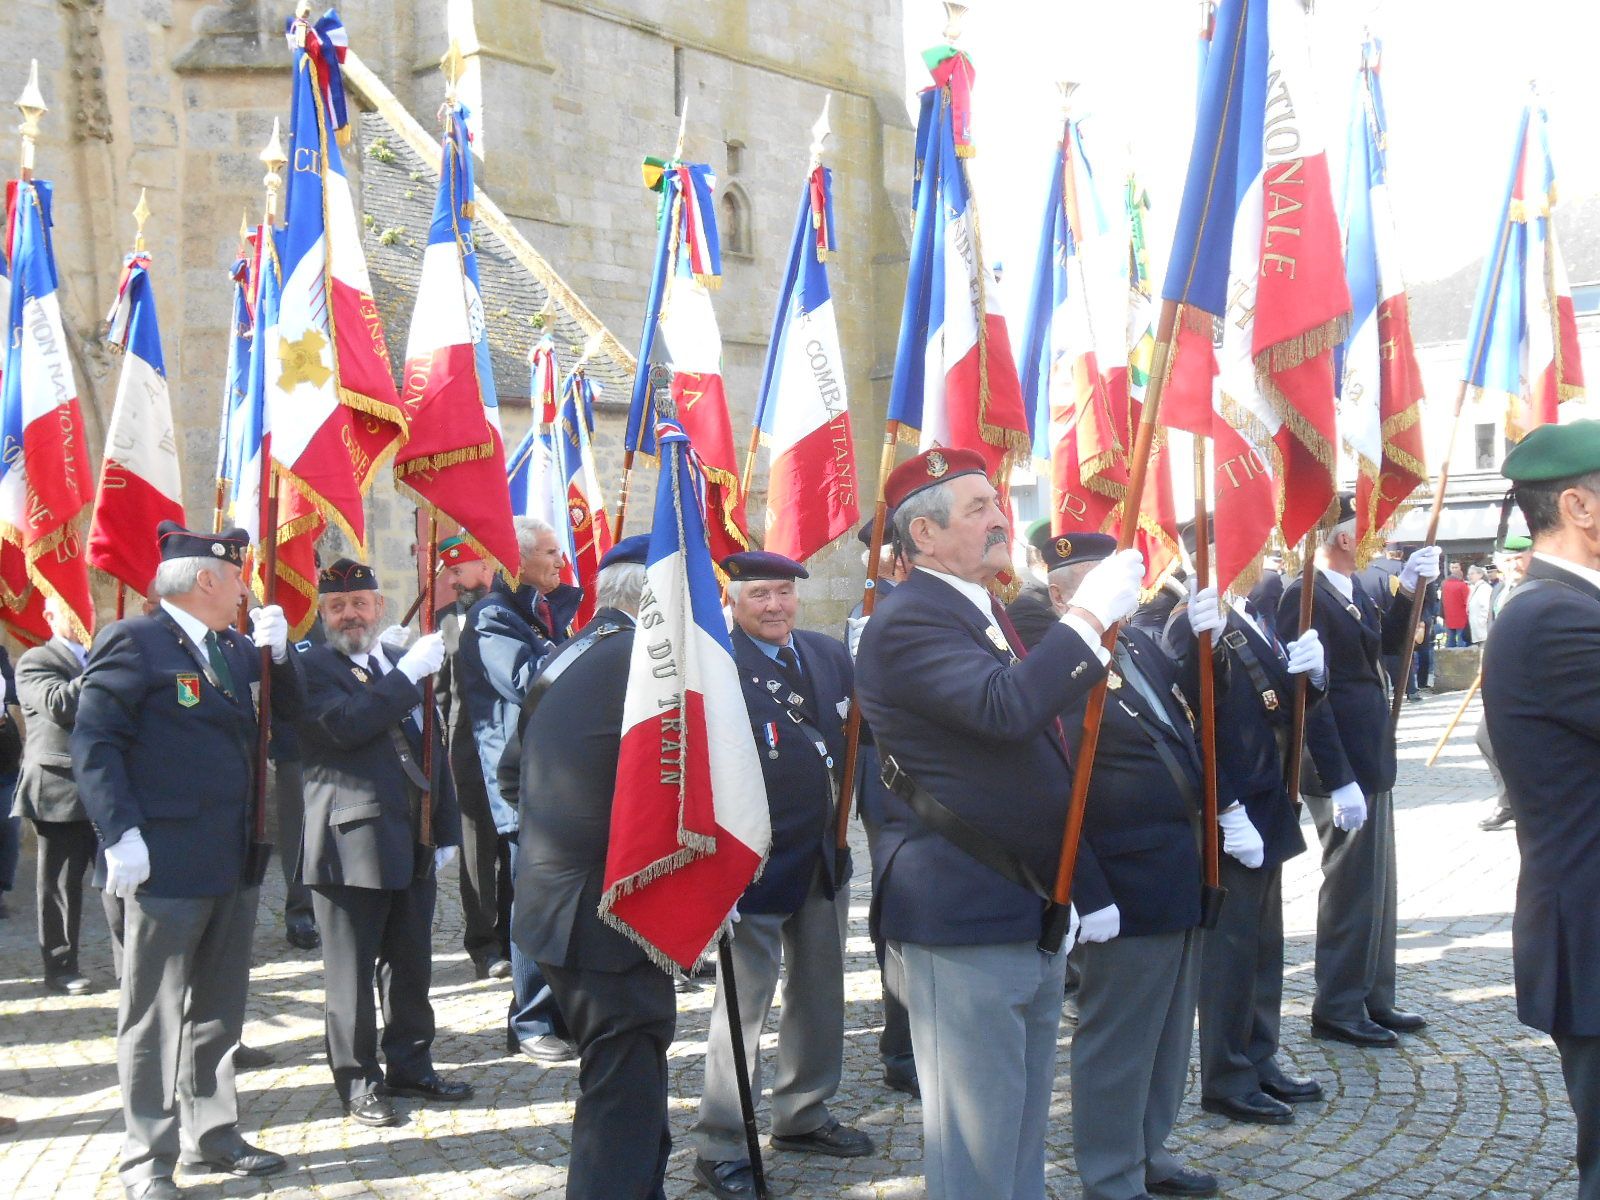 Déplacement vers le monument aux morts "Place du souvenir" accompagné de la musique des sapeurs-pompiers du Morbihan.